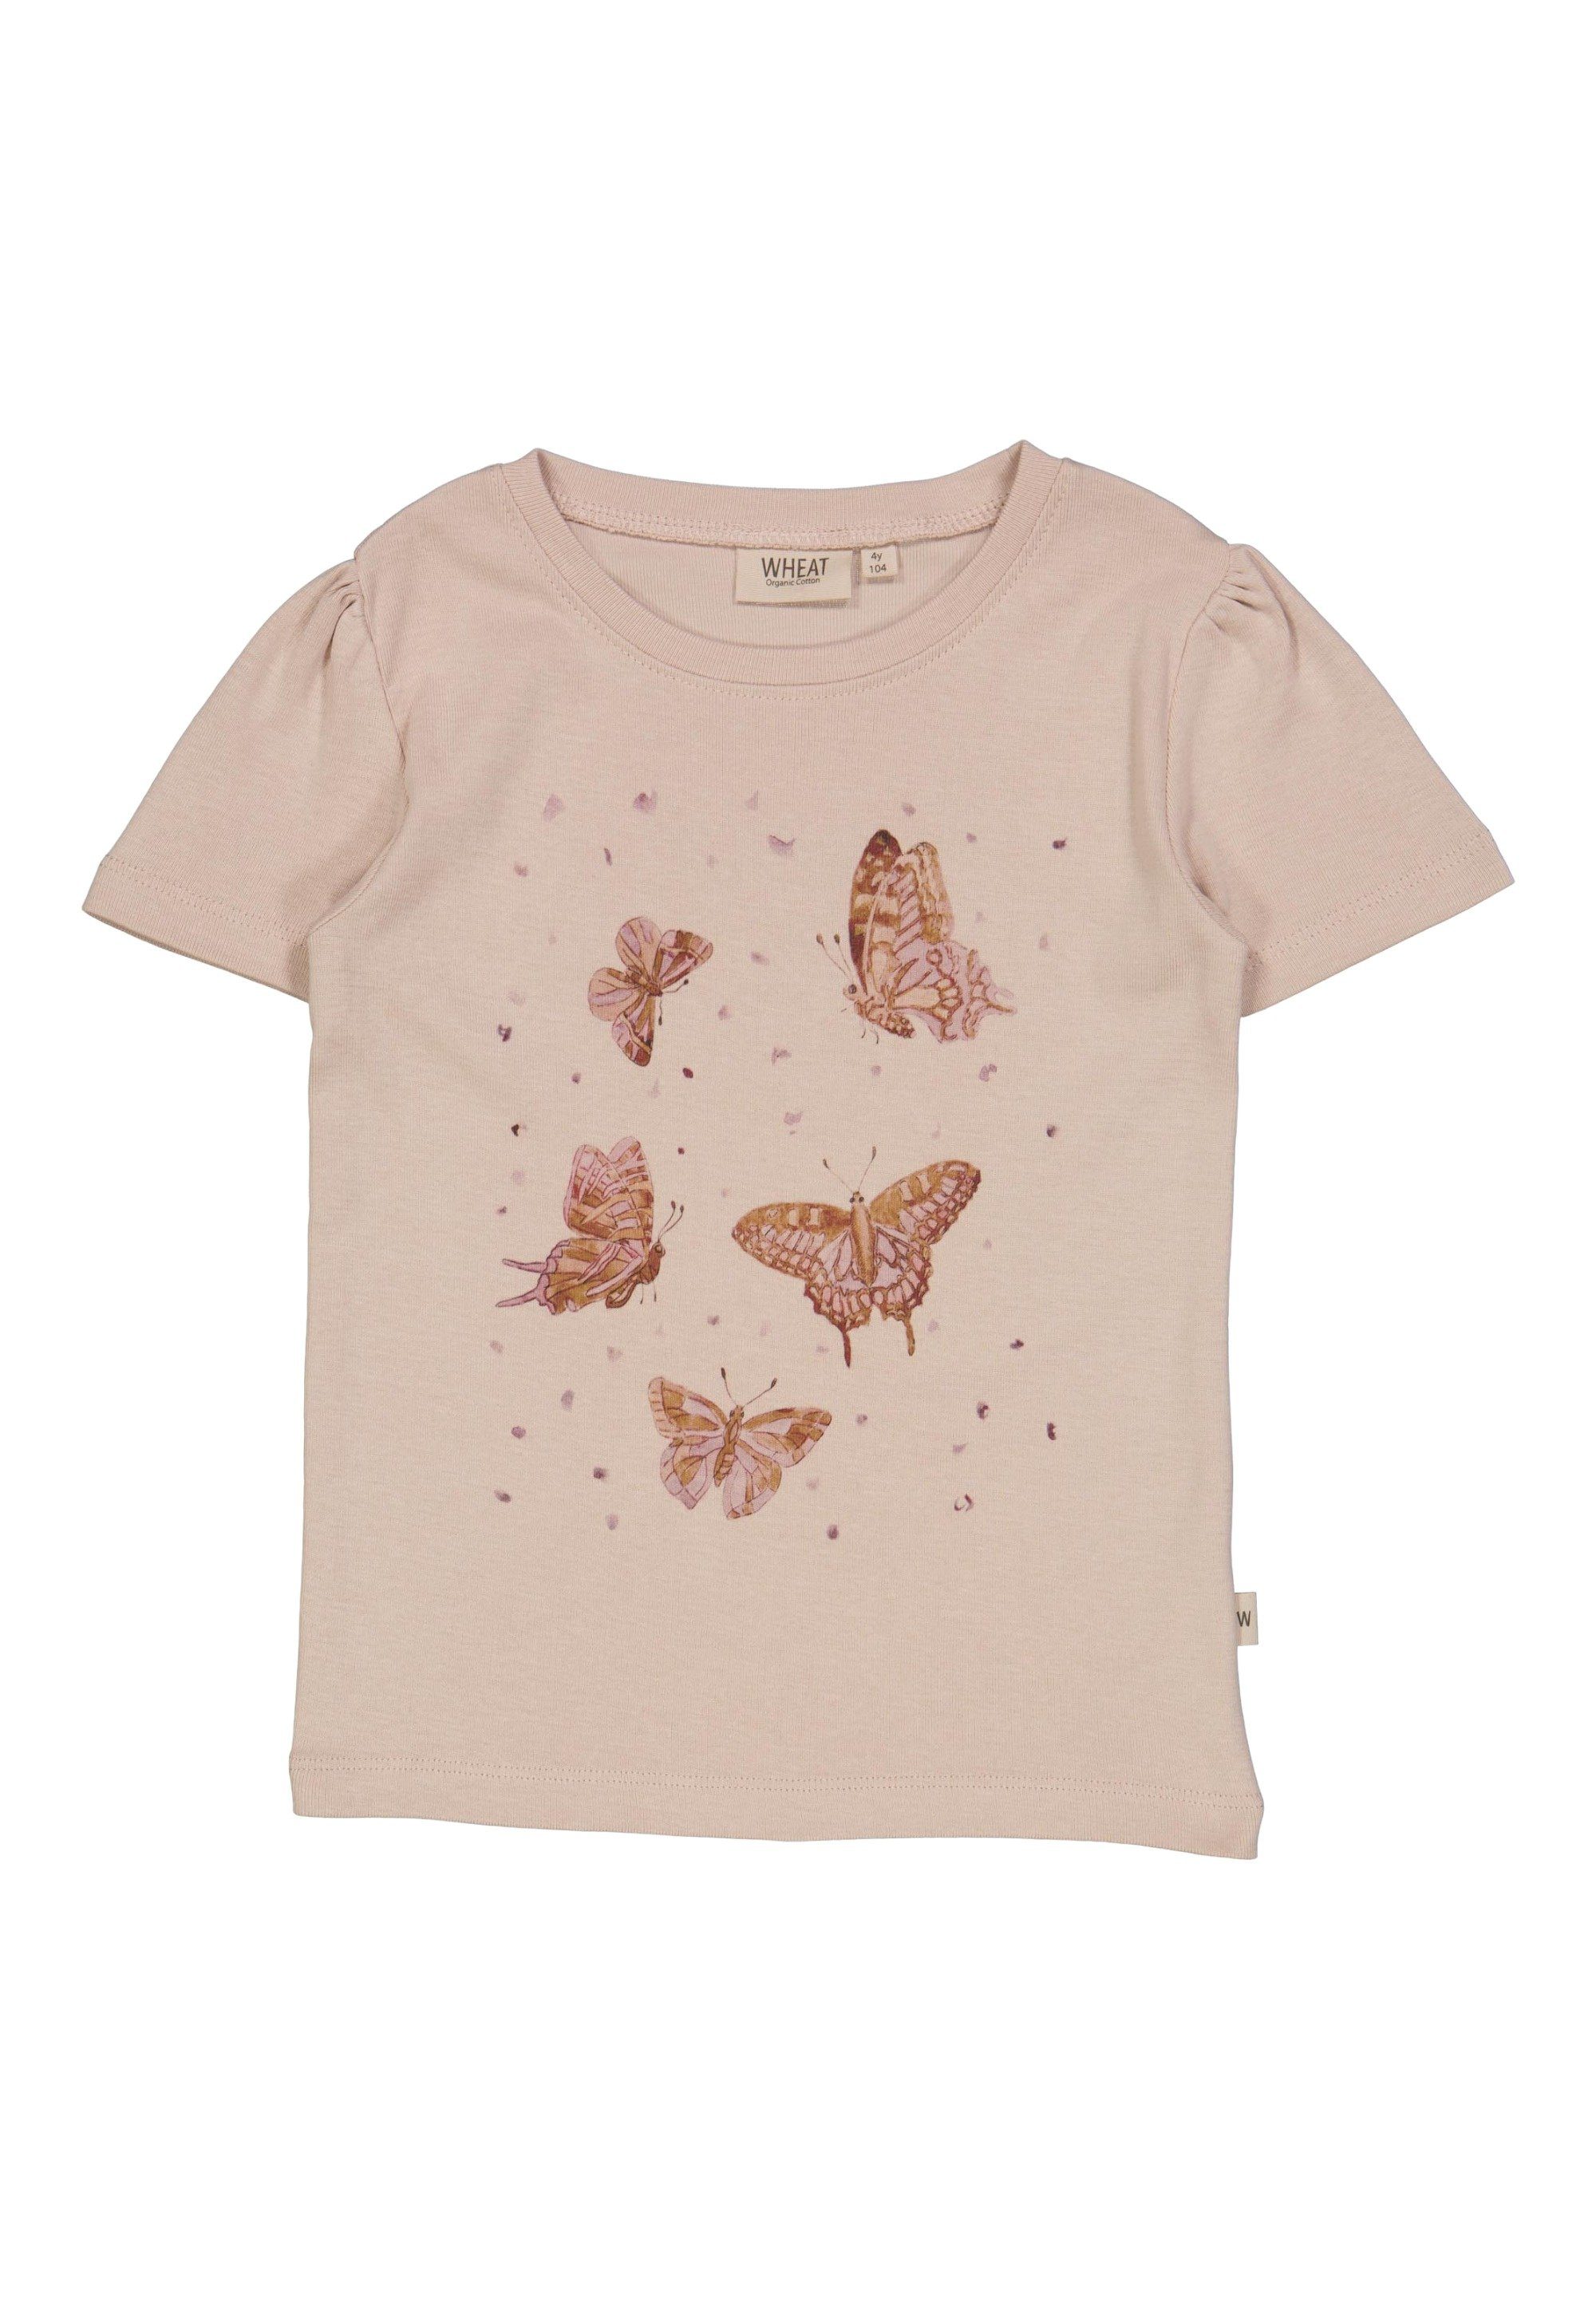 Schmetterlinge WHEAT / nachhaltig T-Shirt Dänisches Design